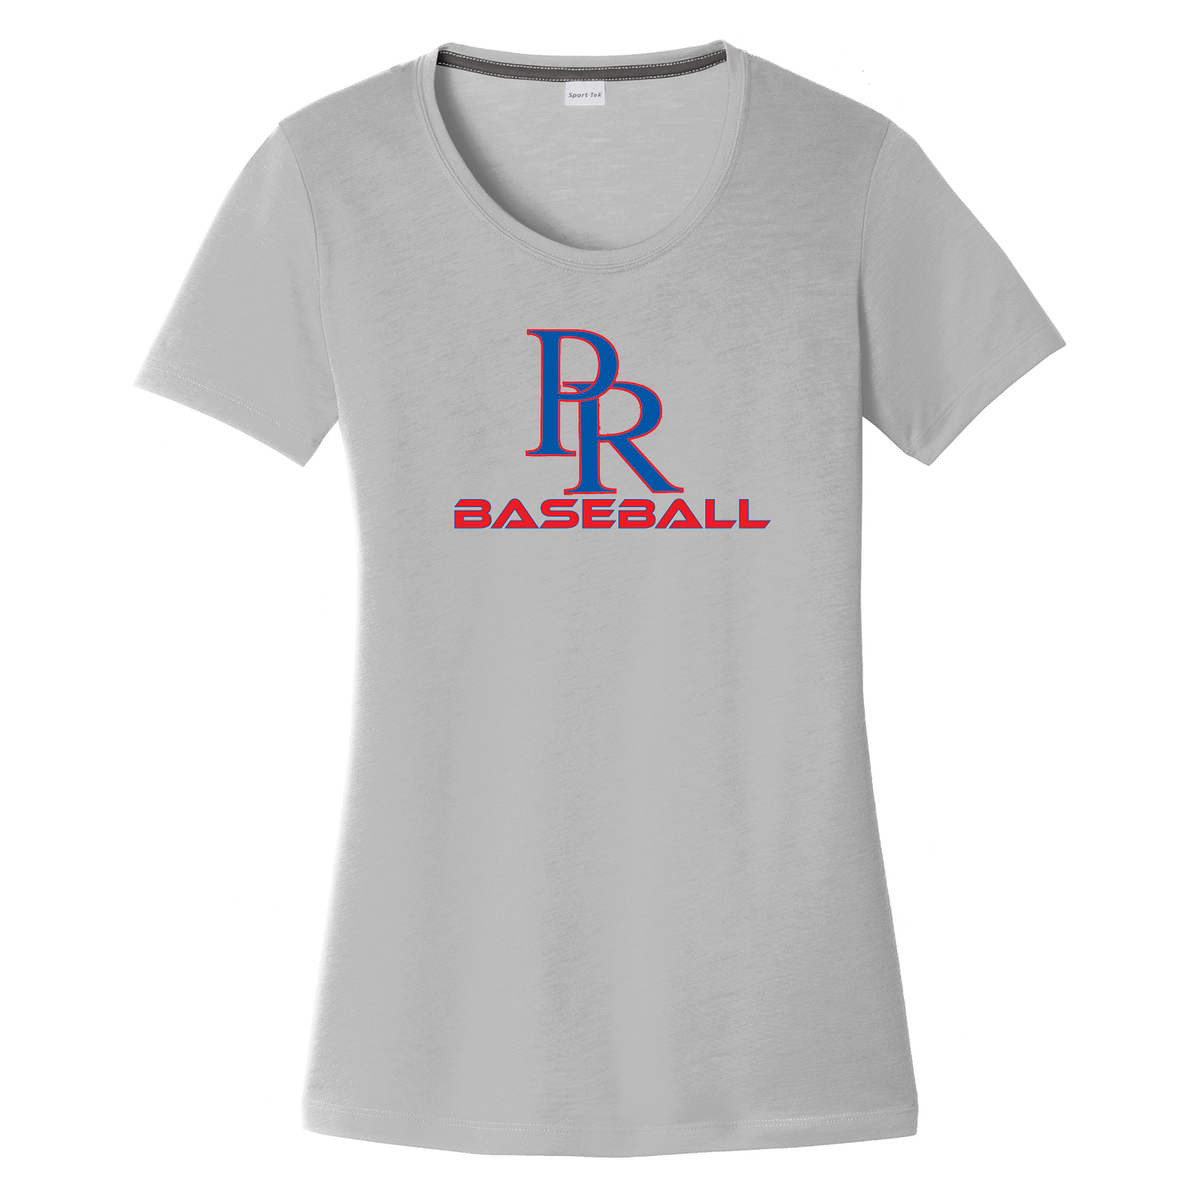 PR Baseball  Women's CottonTouch Performance T-Shirt